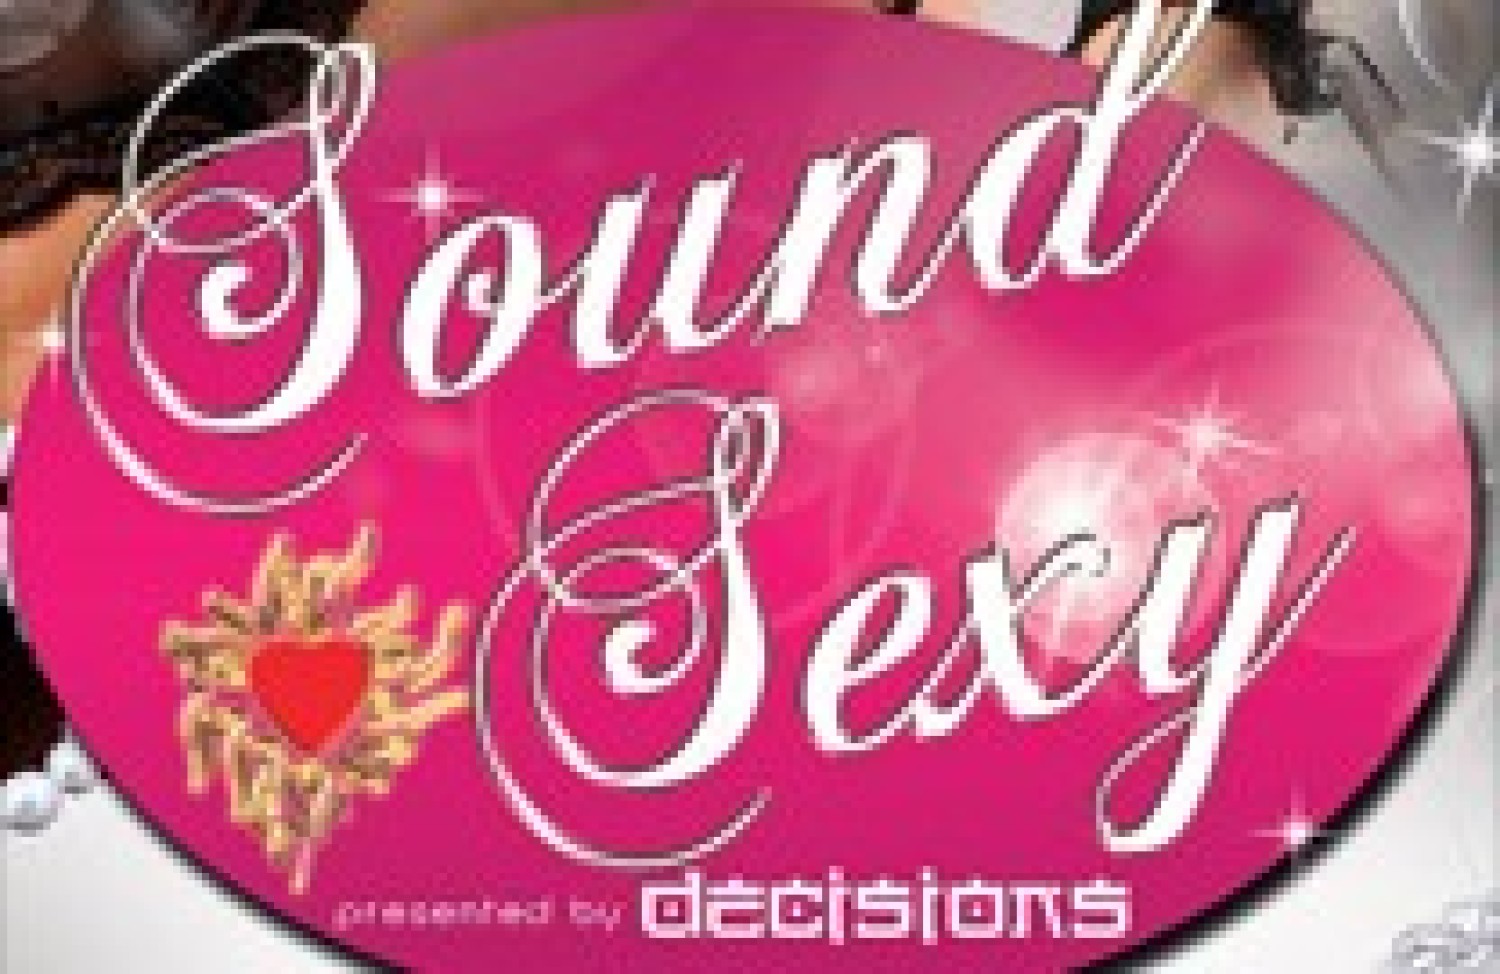 Party nieuws: Zijn jullie al bijgekomen van de vorige Soundsexy?